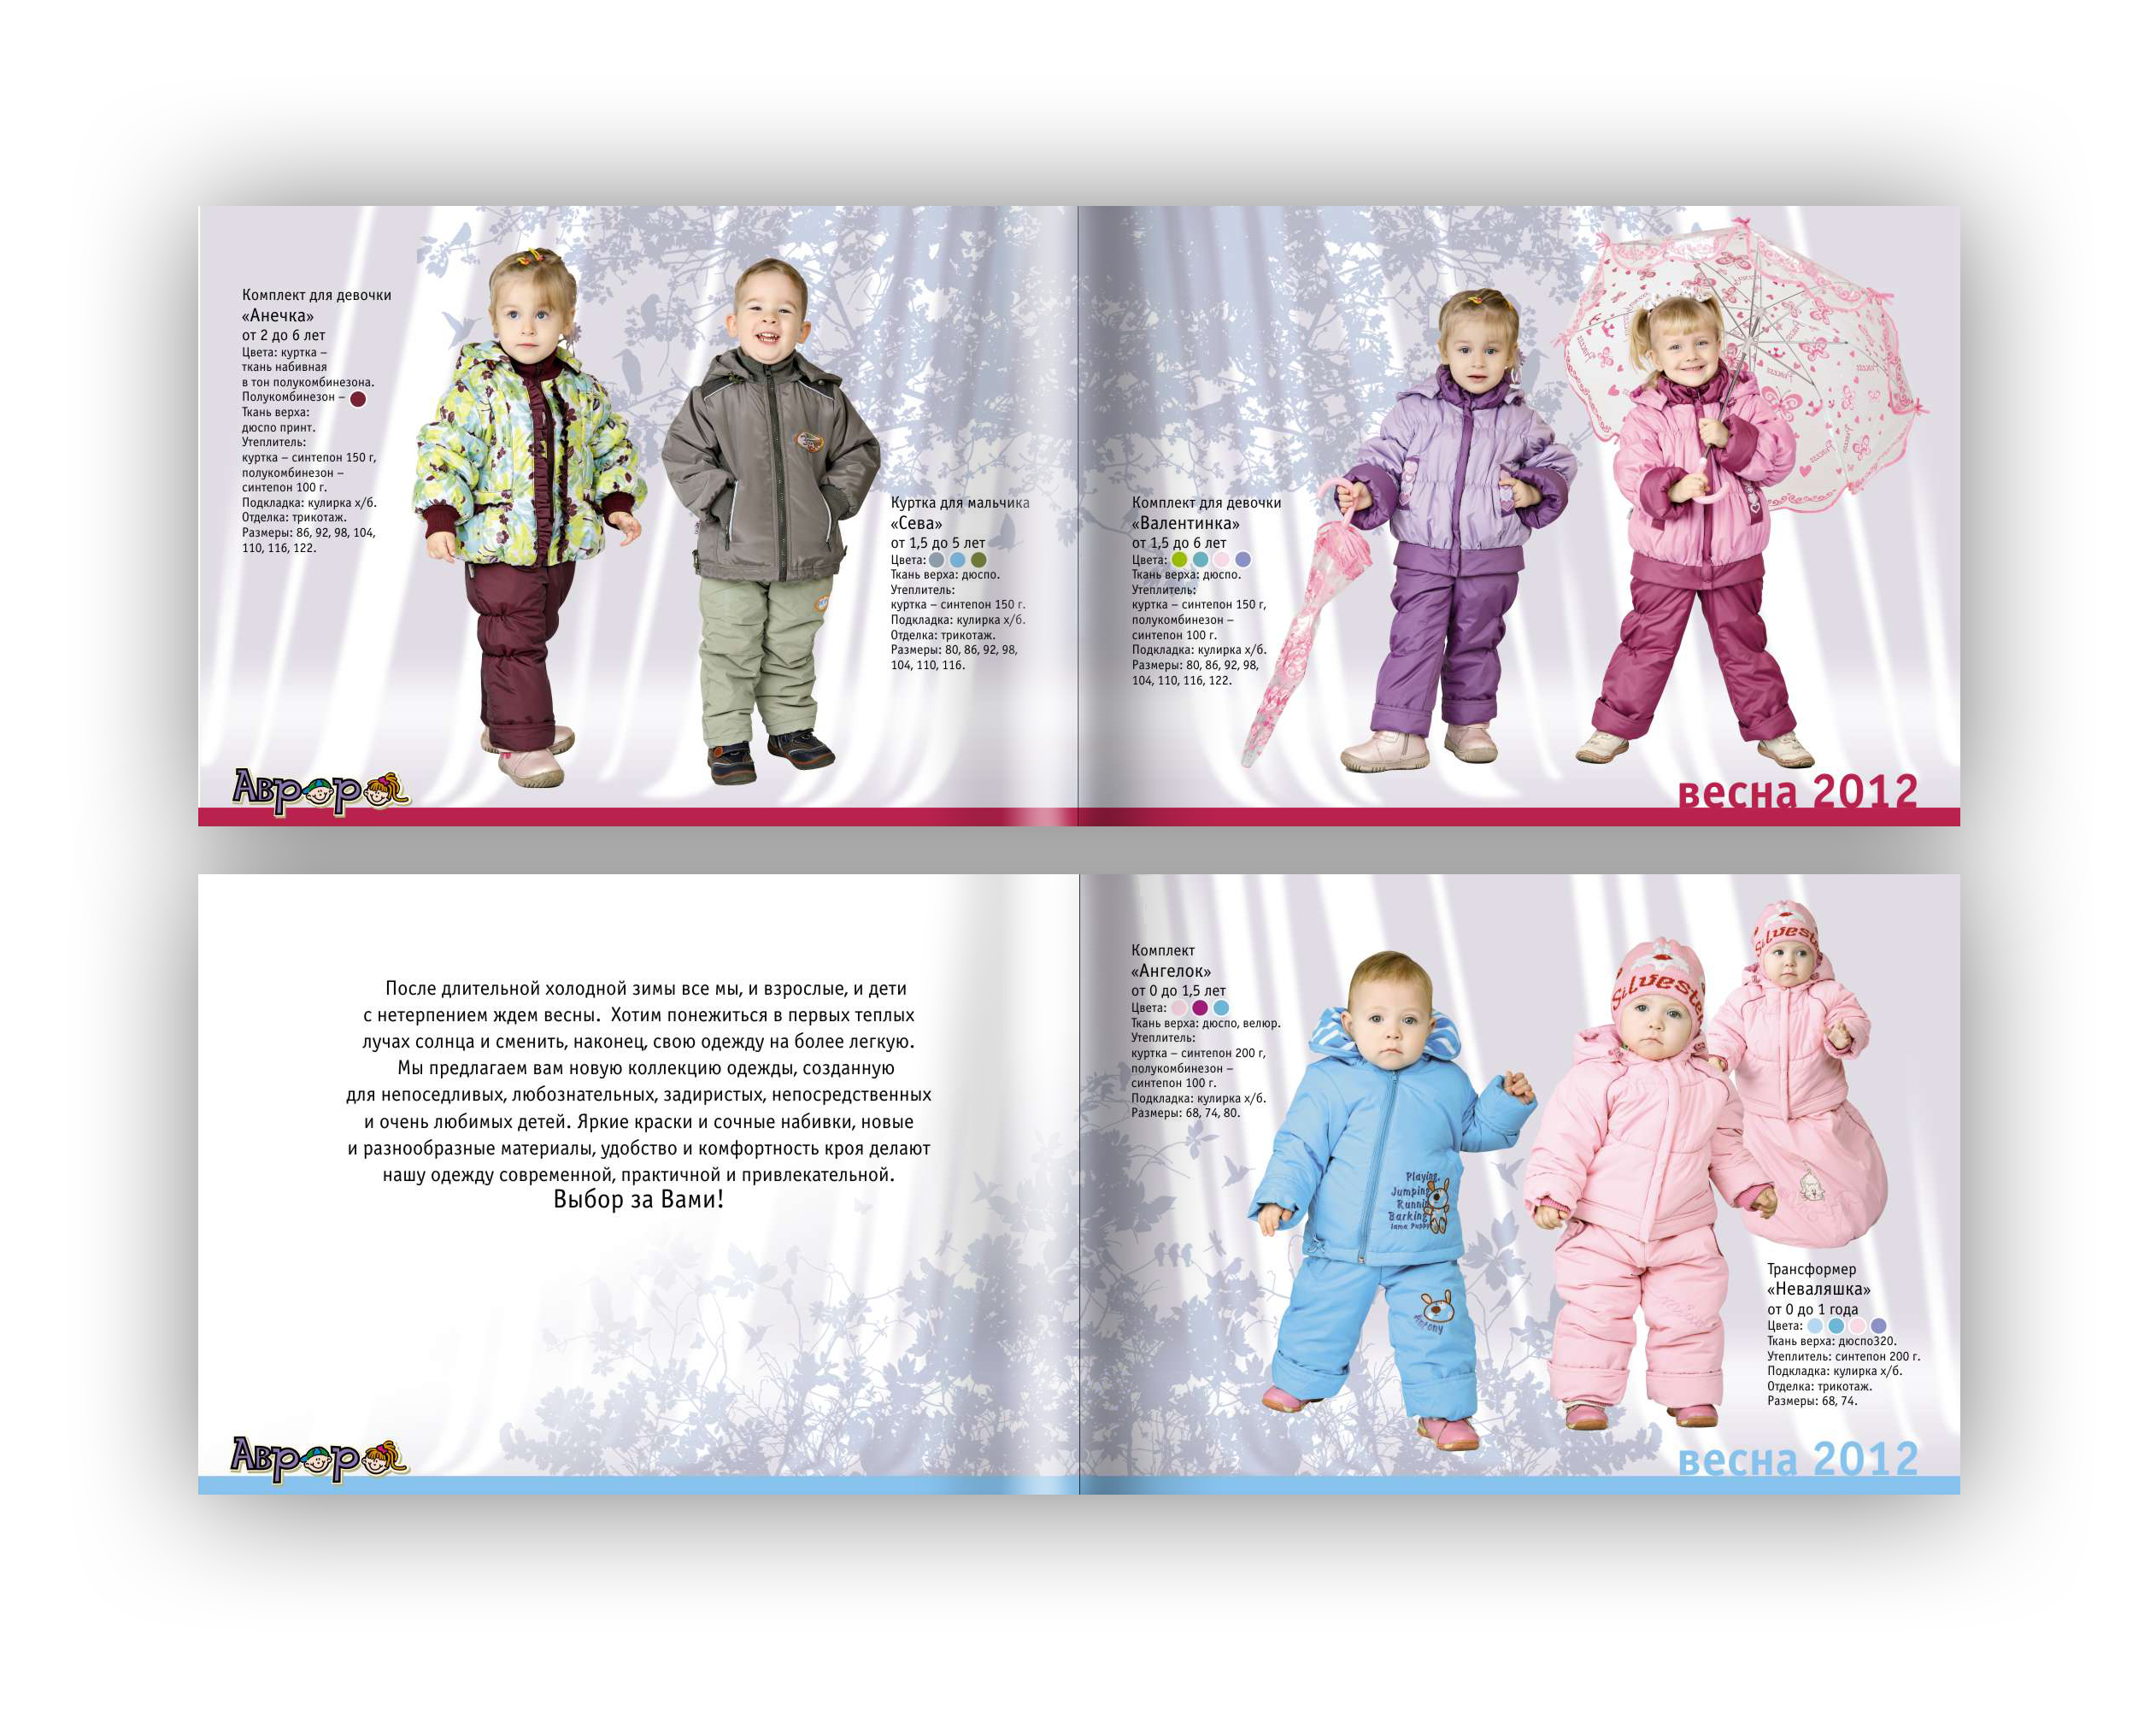 Каталог для производителя детской одежды «Аврора». Весна 2012